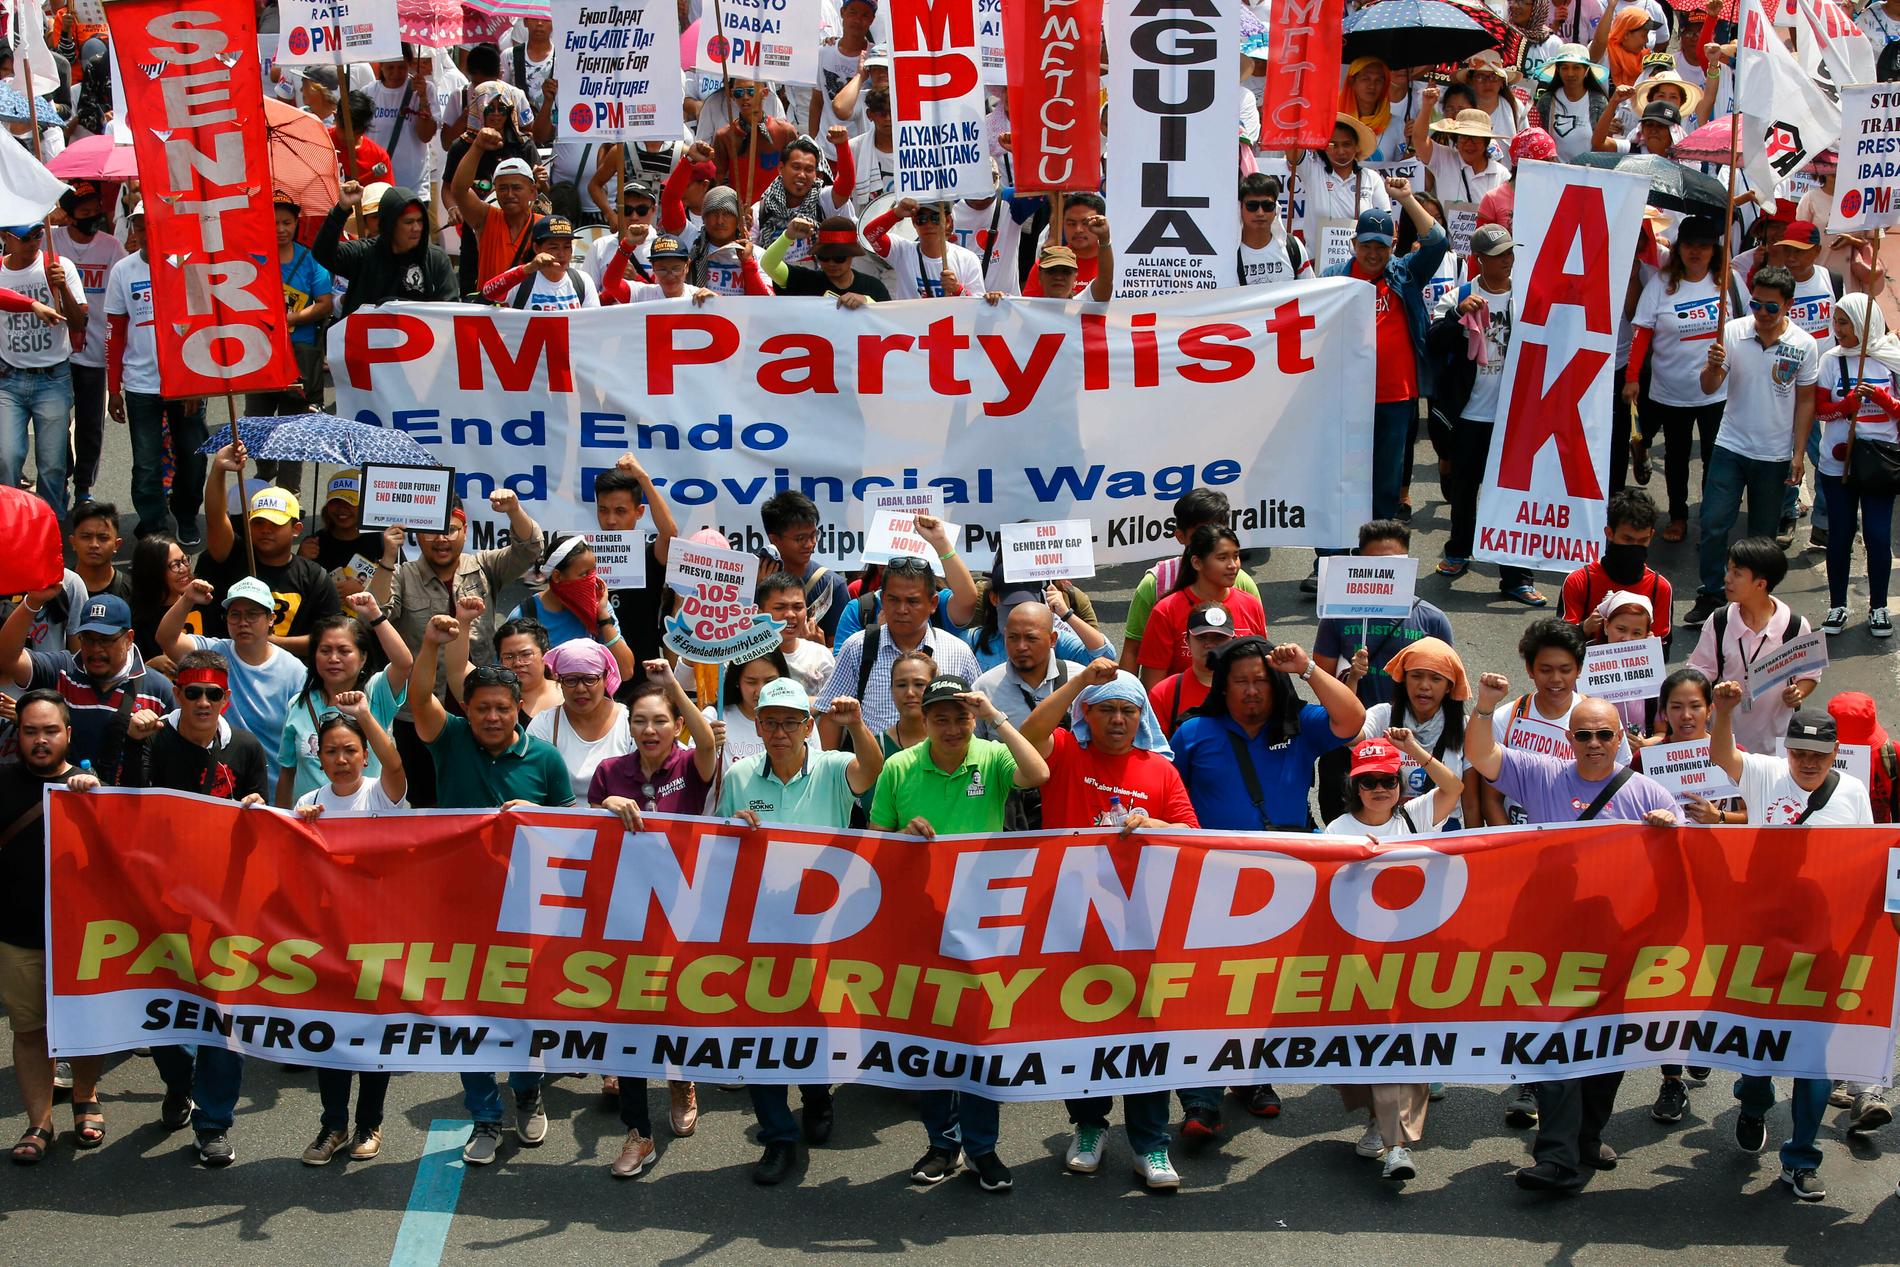 Tusentals marscherar mot presidentpalatset i Manila, Filippinerna för att kräva att regeringen sätter stopp för en särskild typ av tillfälliga anställningsformer. På banderollen står ENDO – "End of contract".